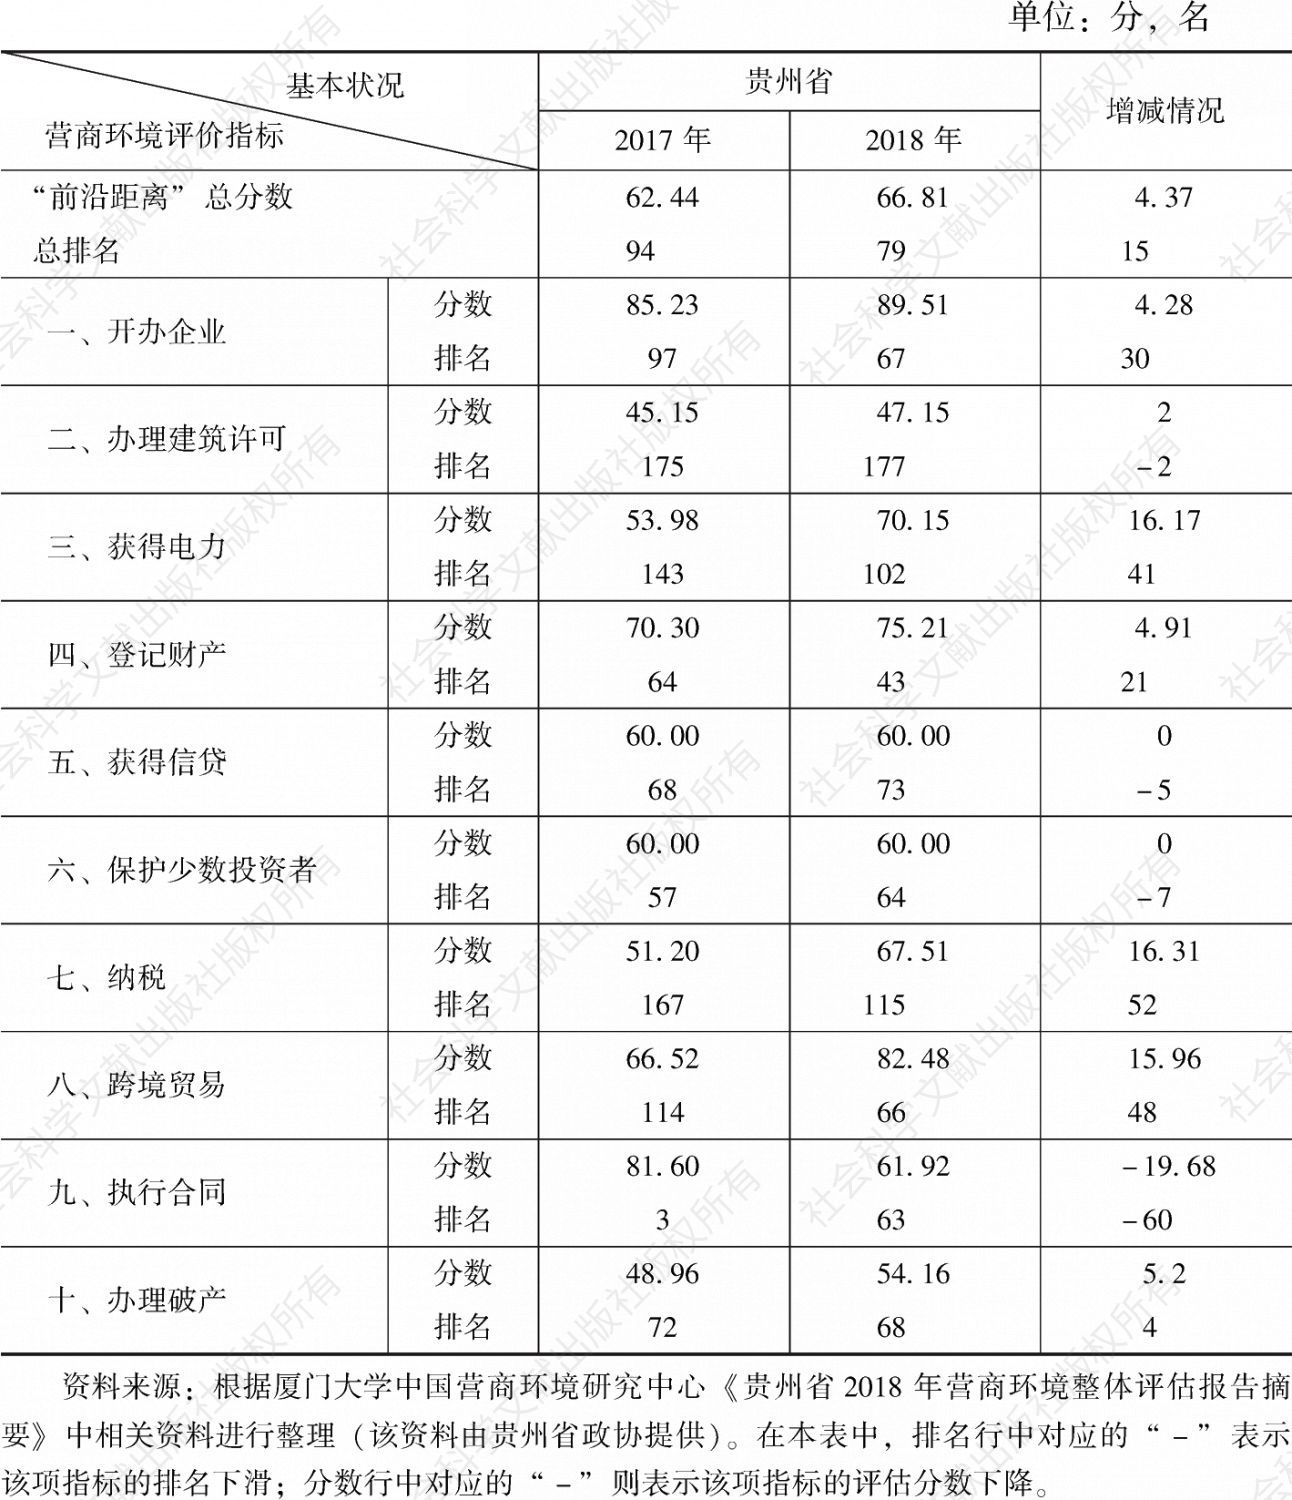 表1 2017年、2018年贵州省营商环境评估结果专项指标比较